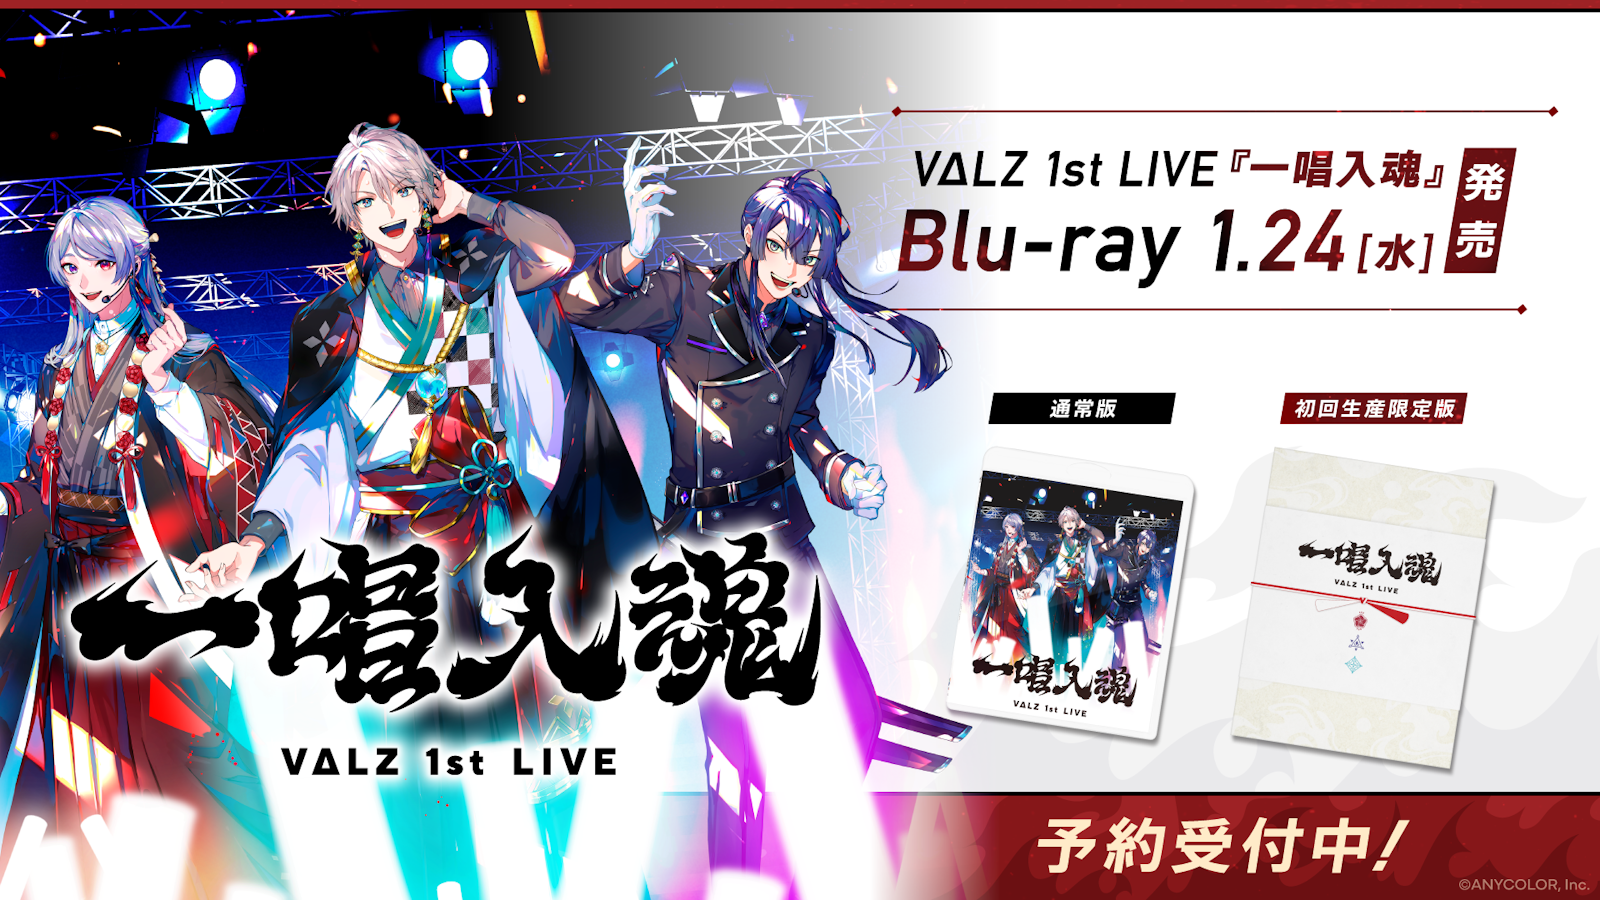 理芽】1st LIVE Blu-ray「NEUROMANCE」CD21曲 - ミュージック